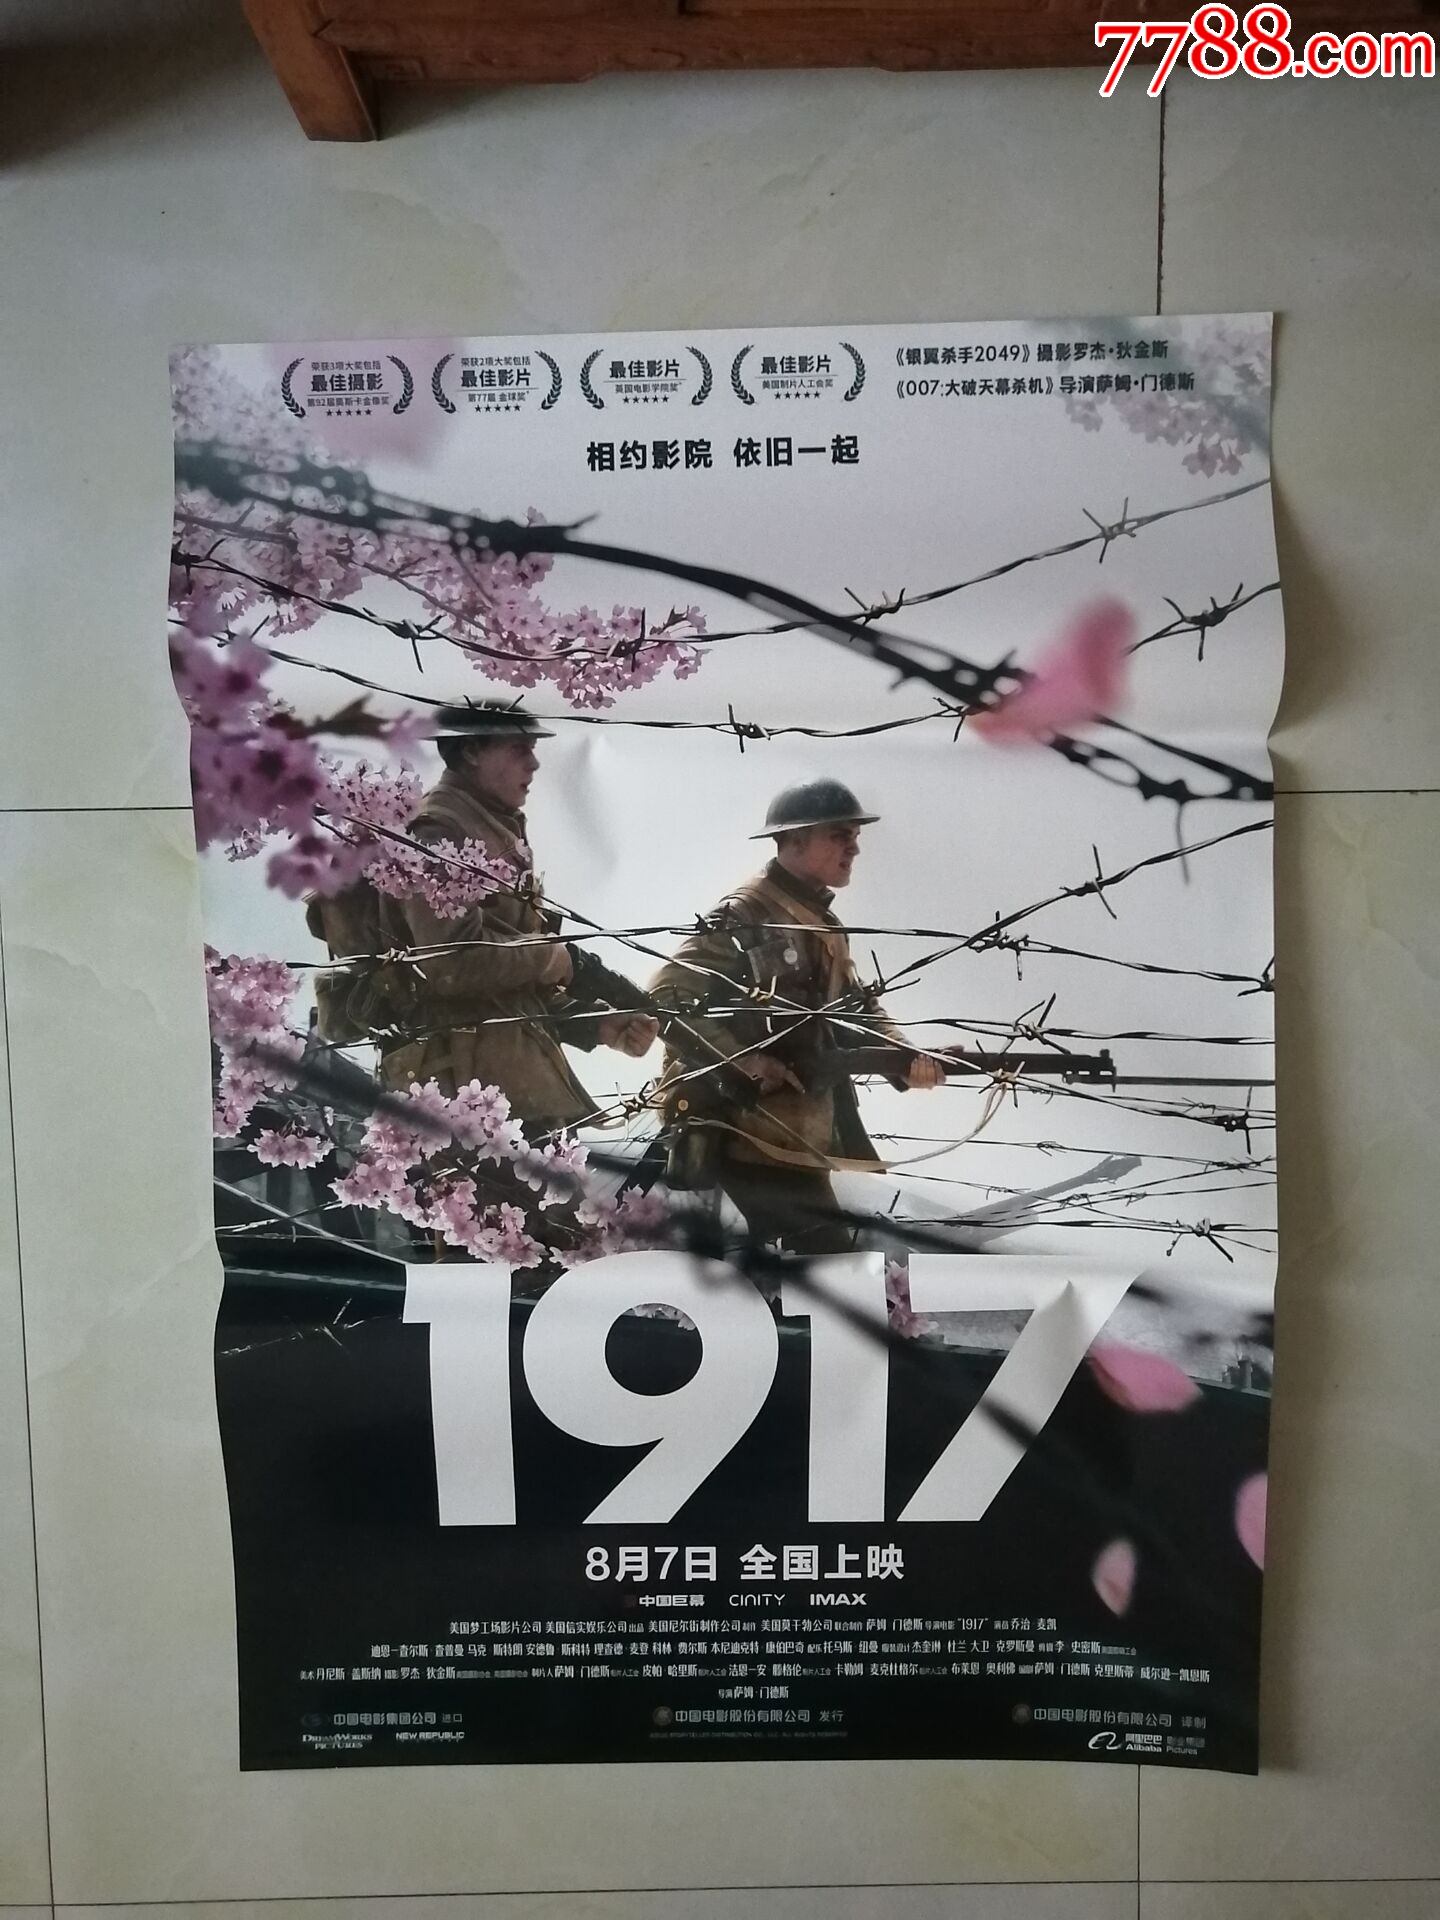 1917-价格:30元-se83706447-电影海报-零售-7788收藏__收藏热线